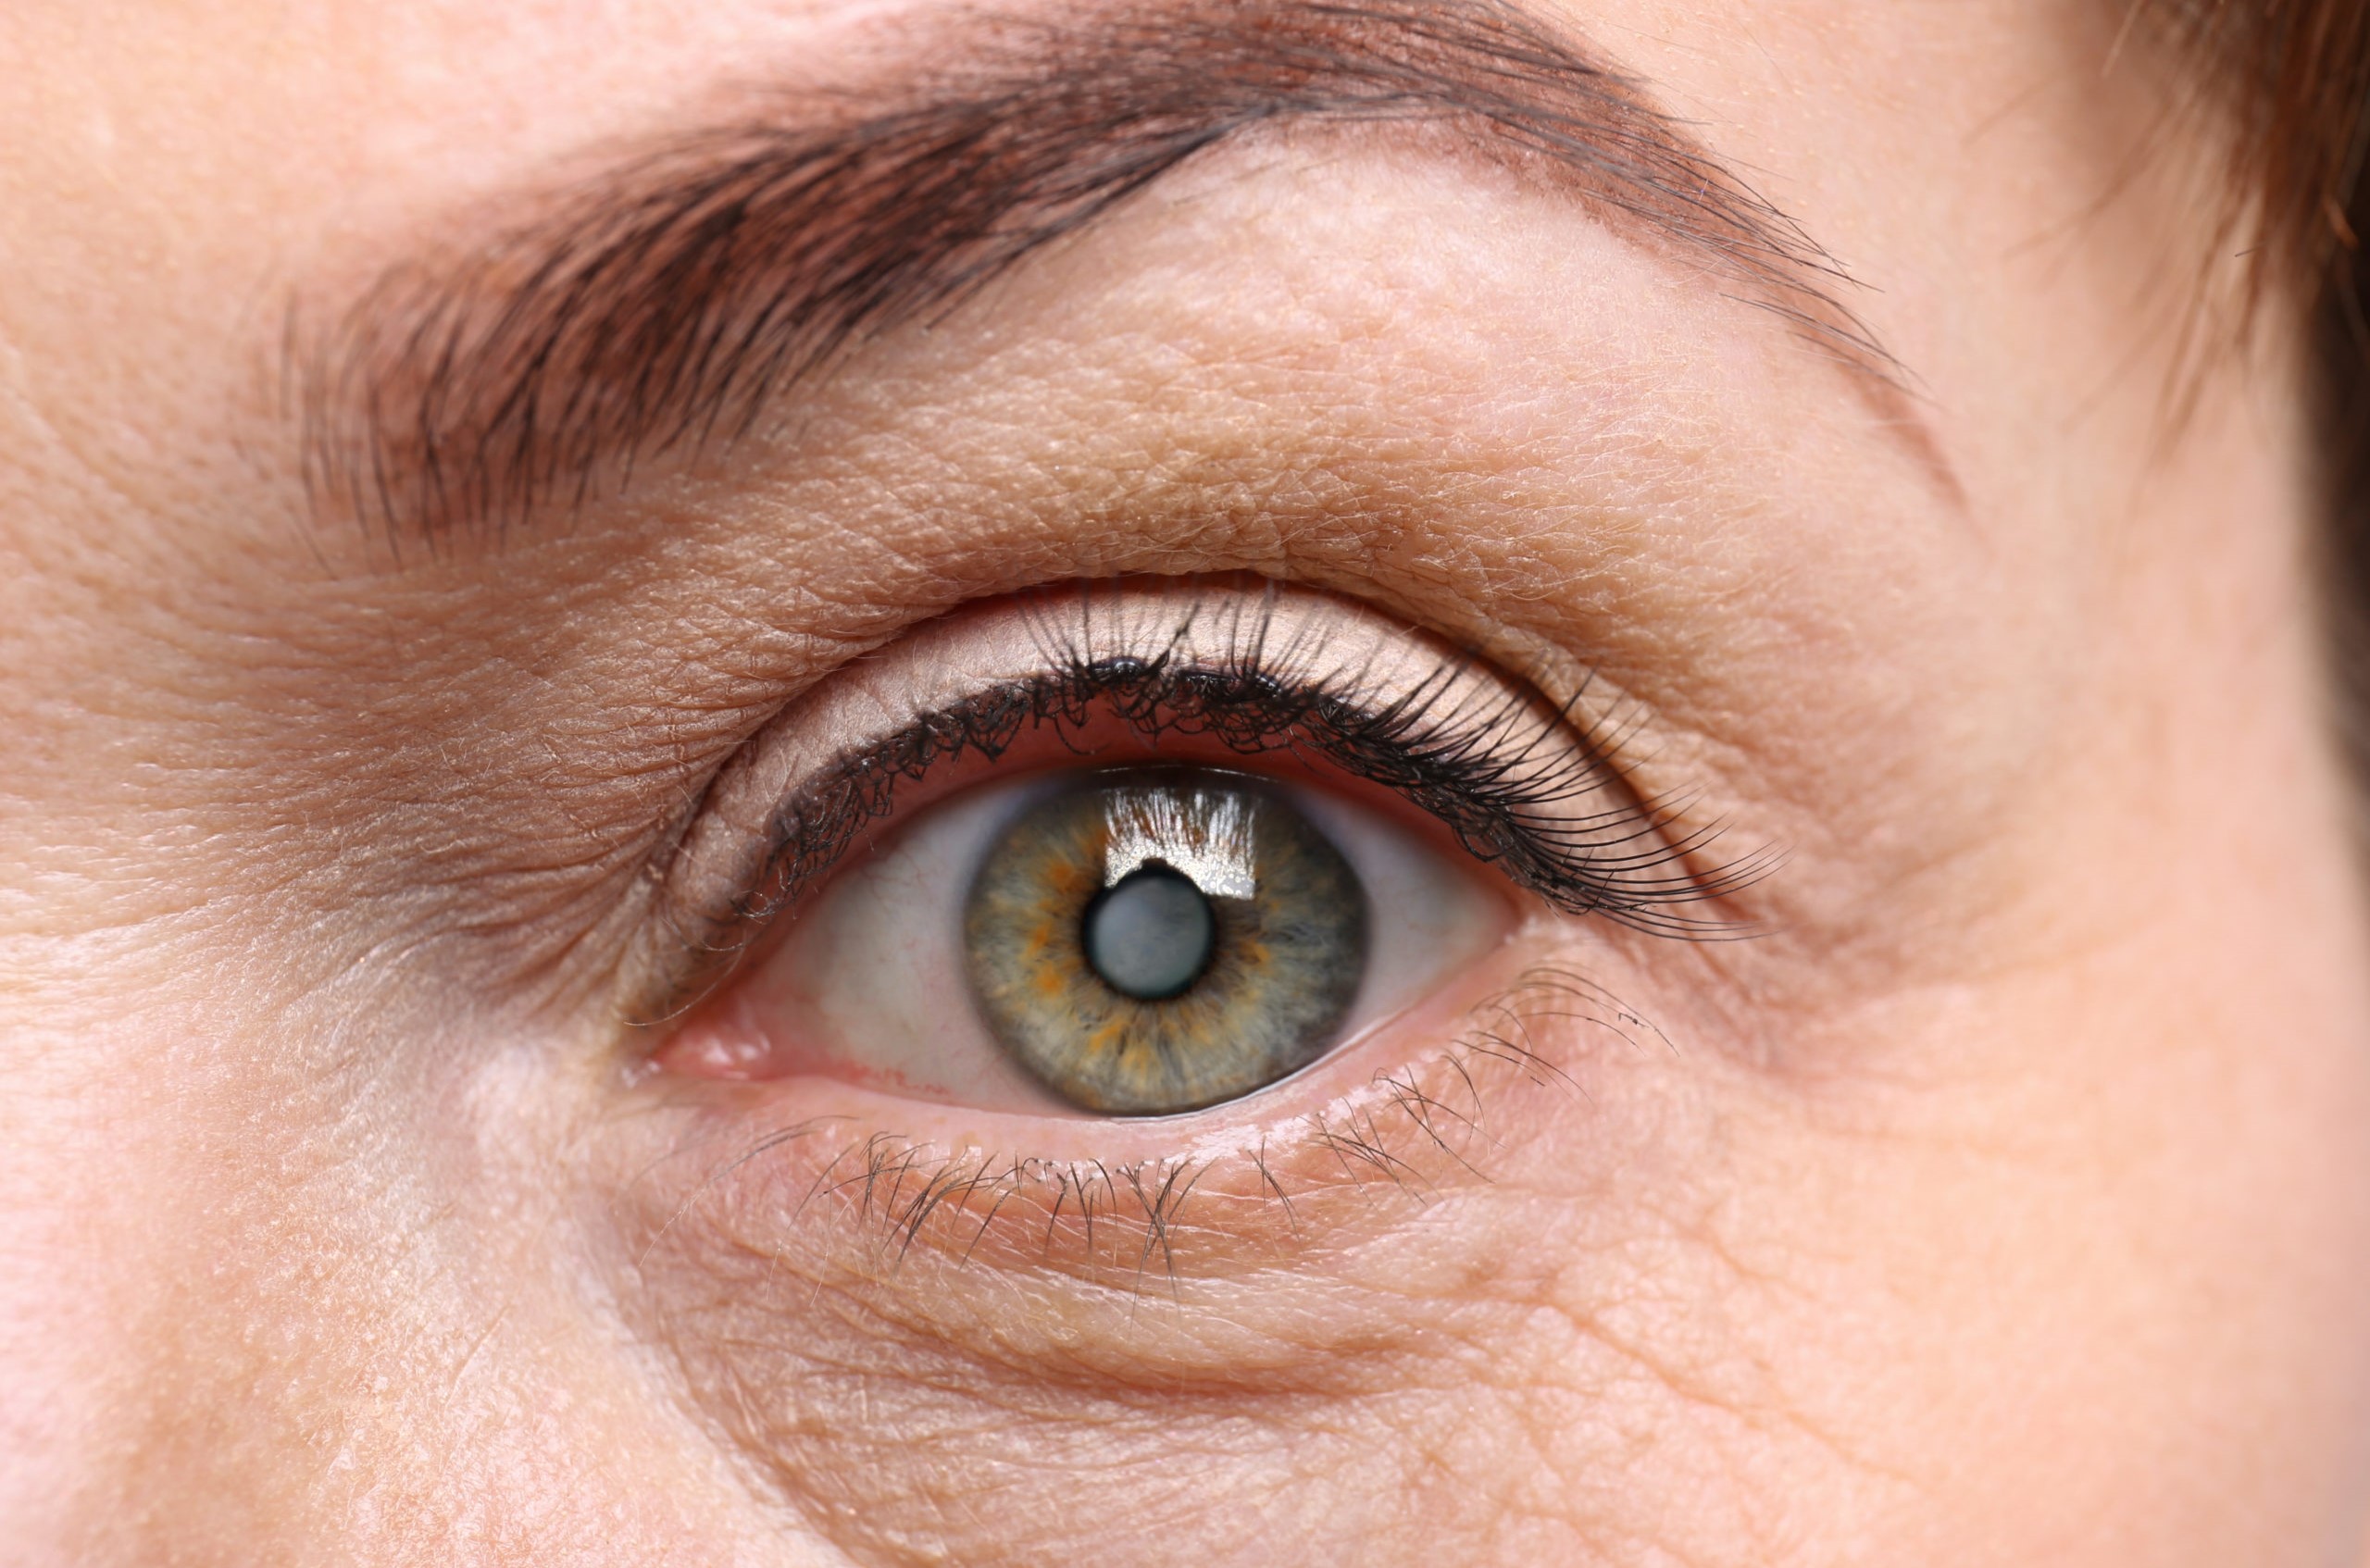 కంటిశుక్లం యొక్క కారణాలు మరియు లక్షణాలు – Causes and symptoms of cataracts